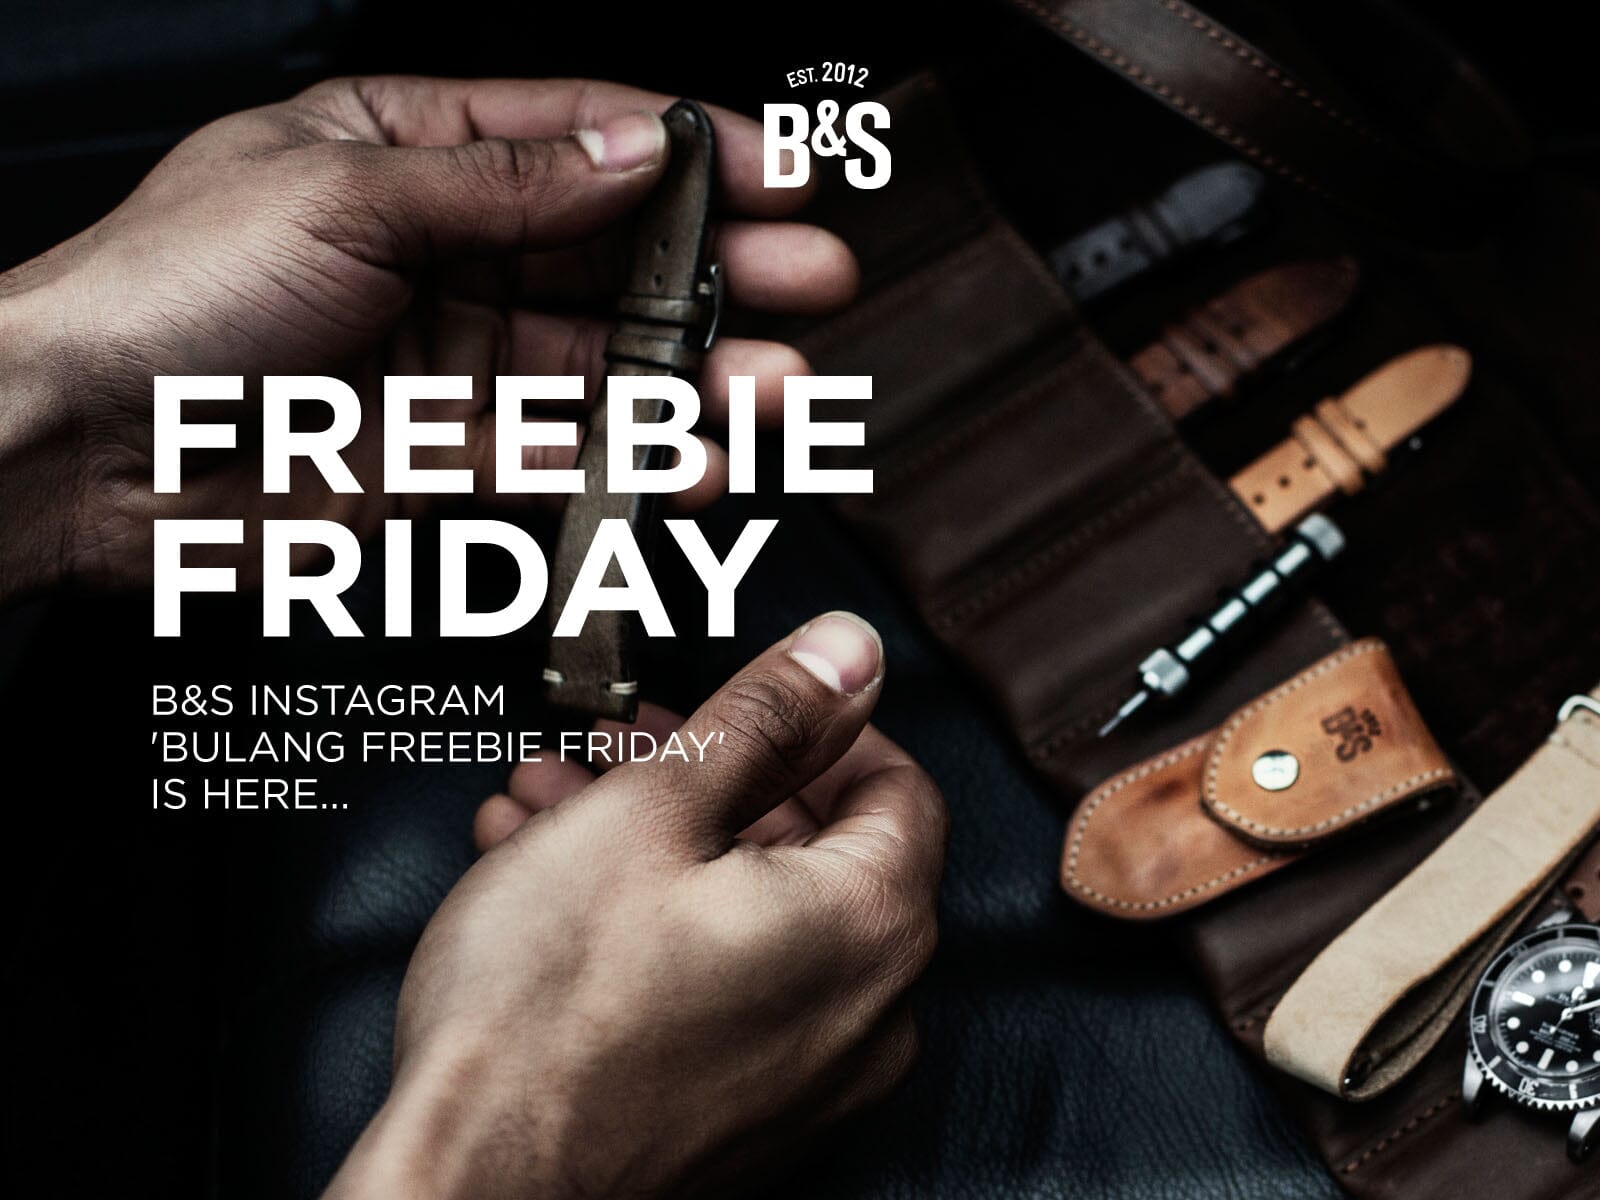 B&S Instagram 'Bulang Freebie Friday' is Here...